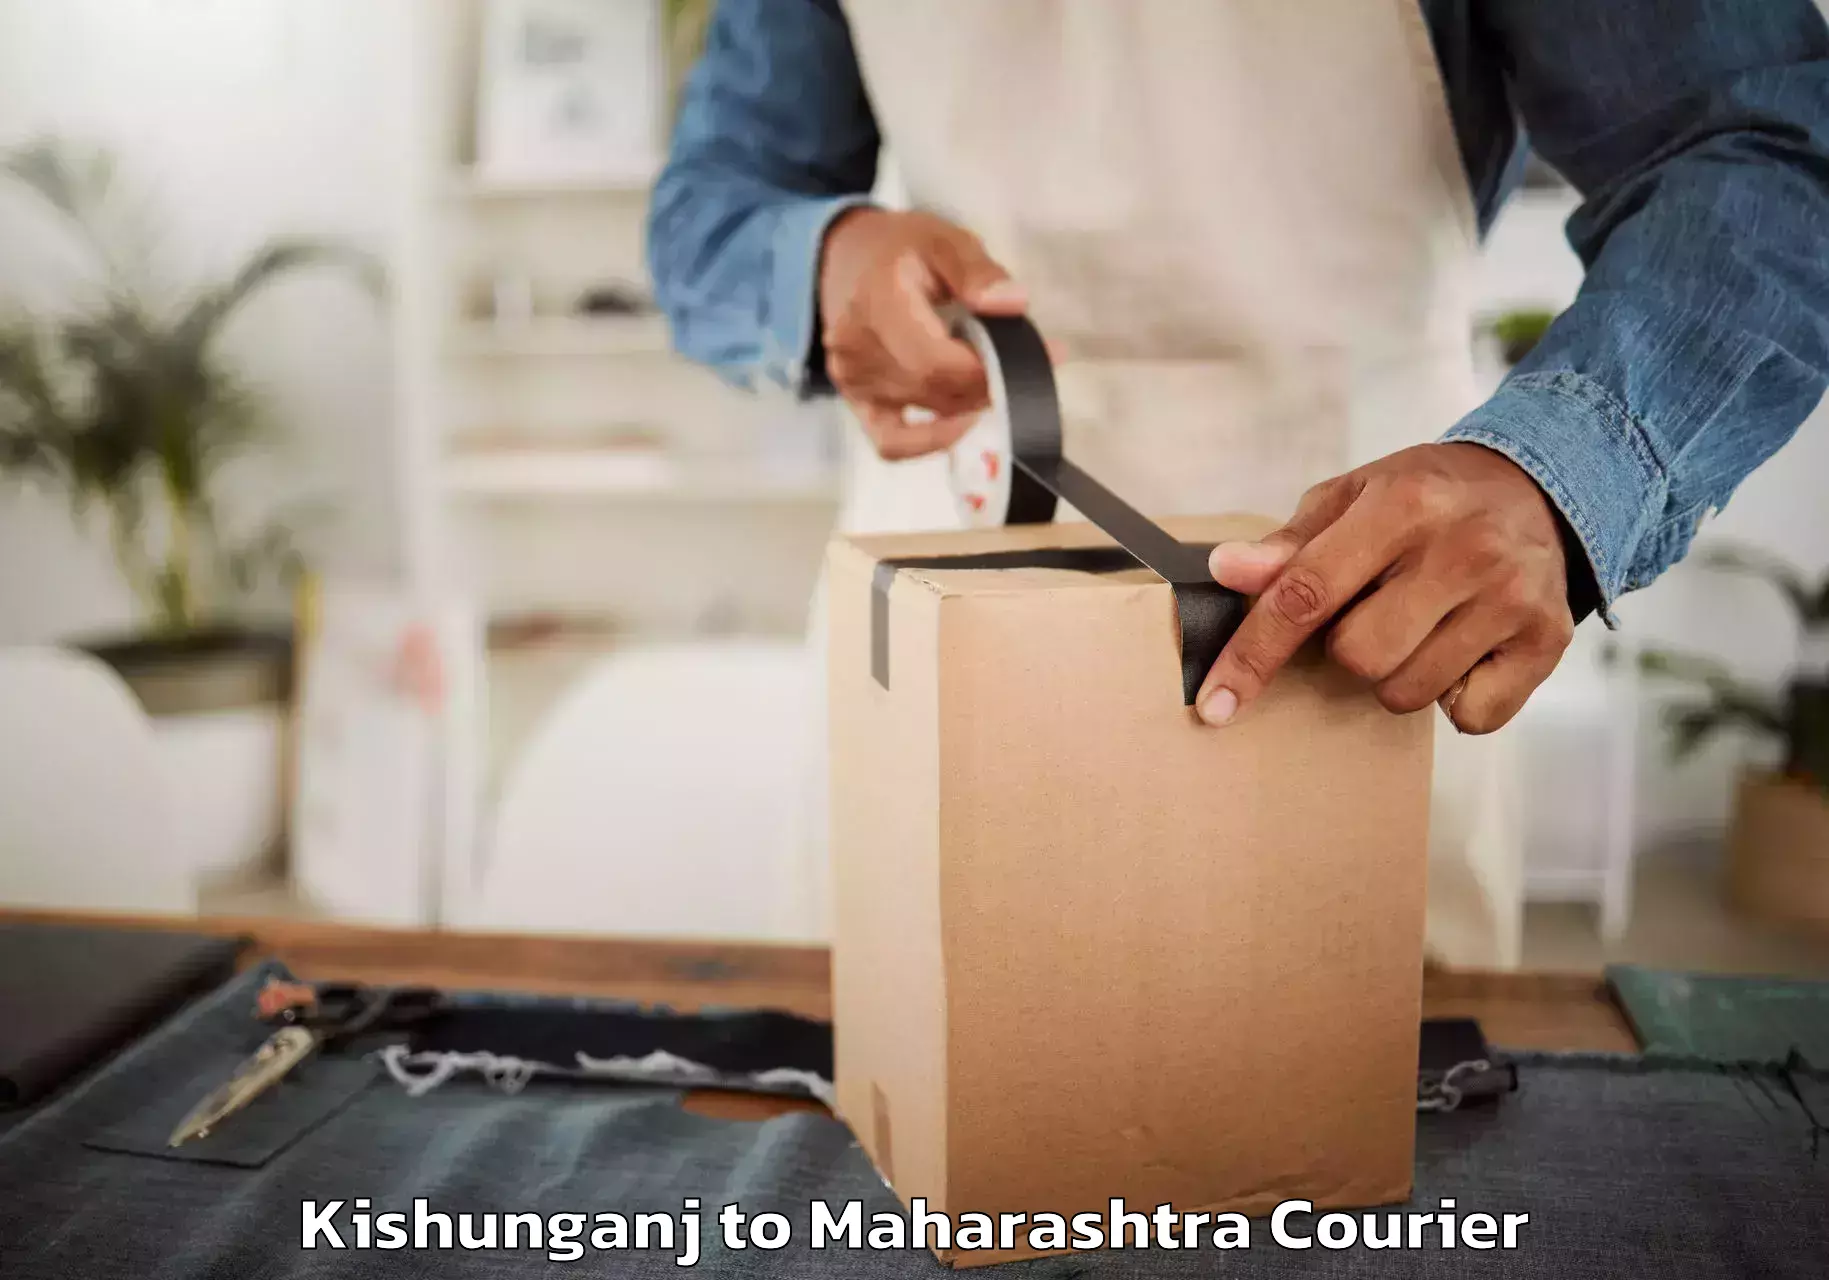 Furniture transport experts Kishunganj to Maharashtra